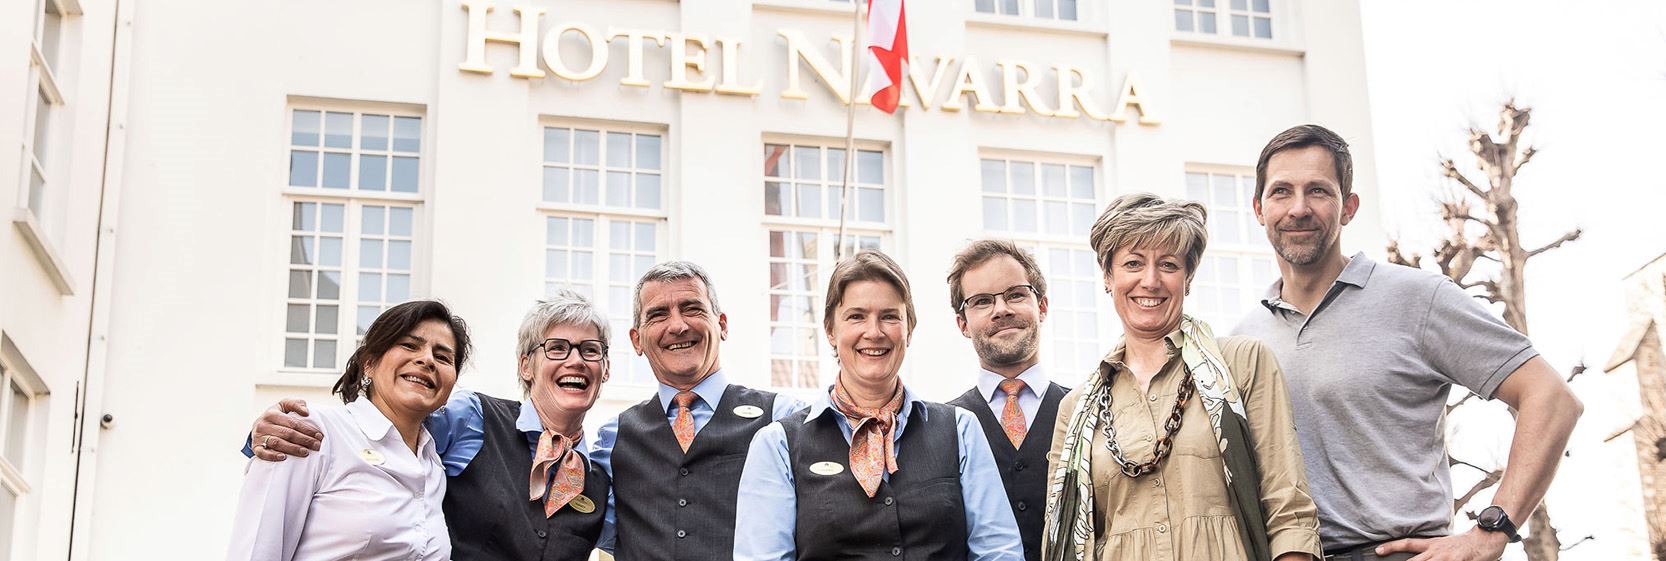 Hotel Navarra Brugge Persoonlijke Service